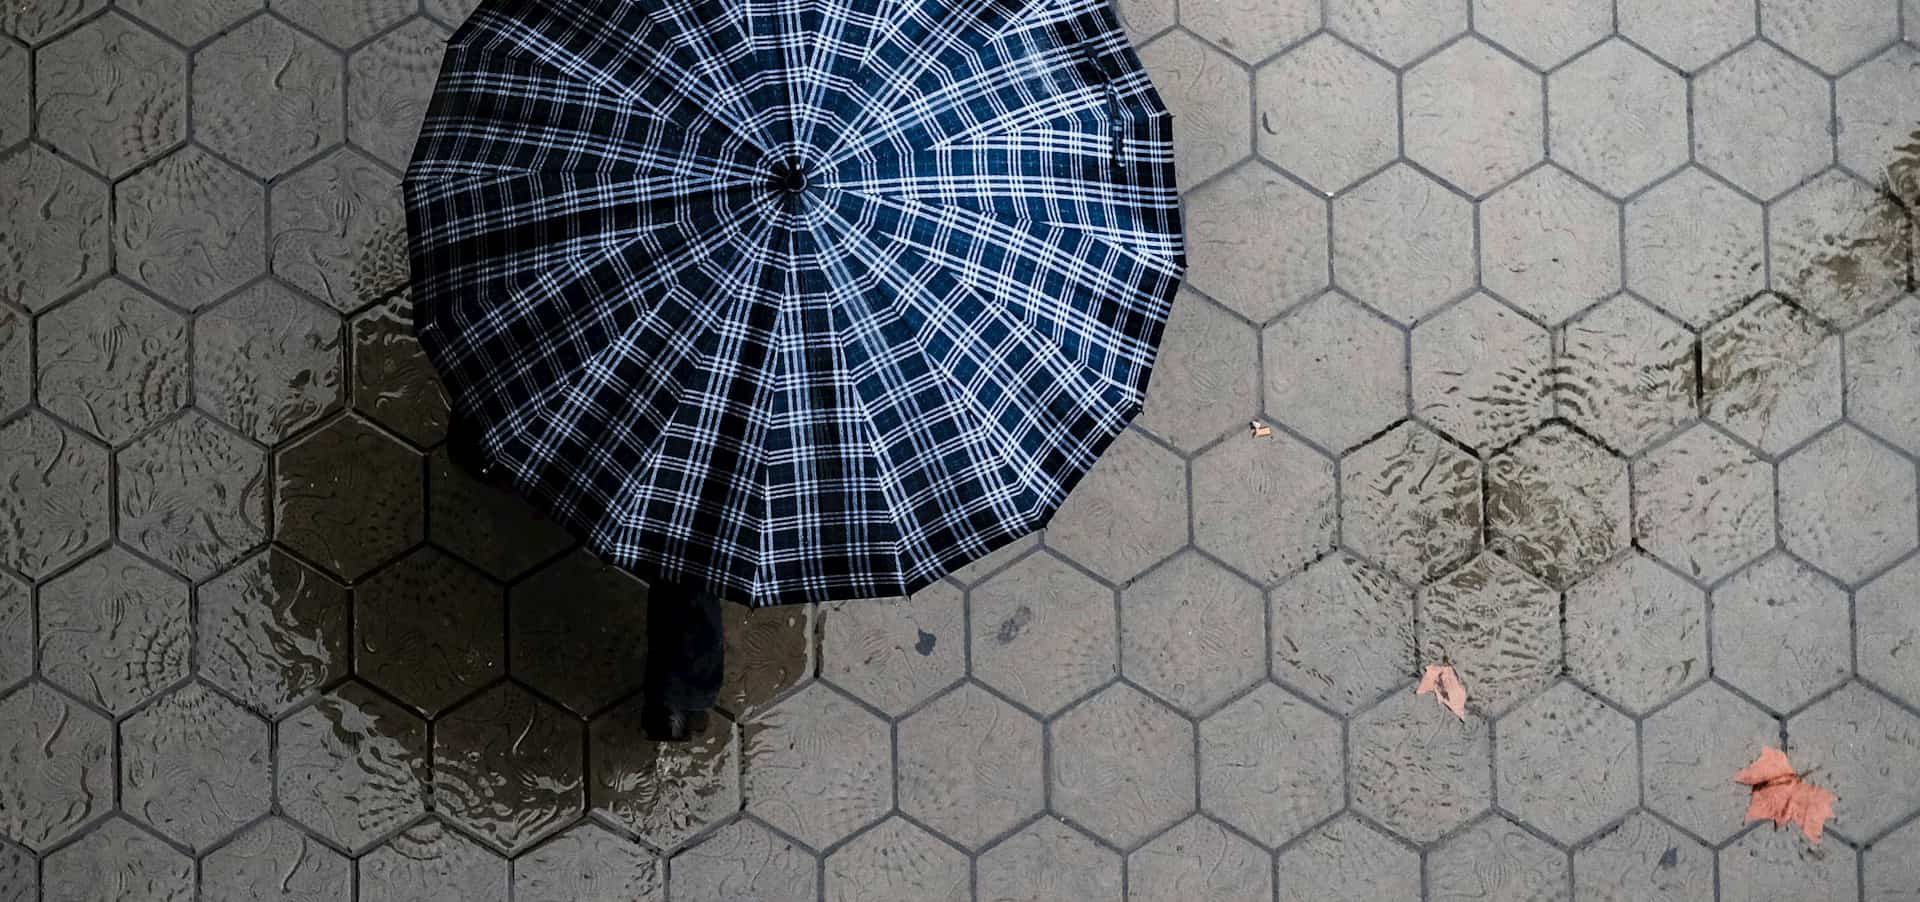 aerial view of umbrella against wet paving stones